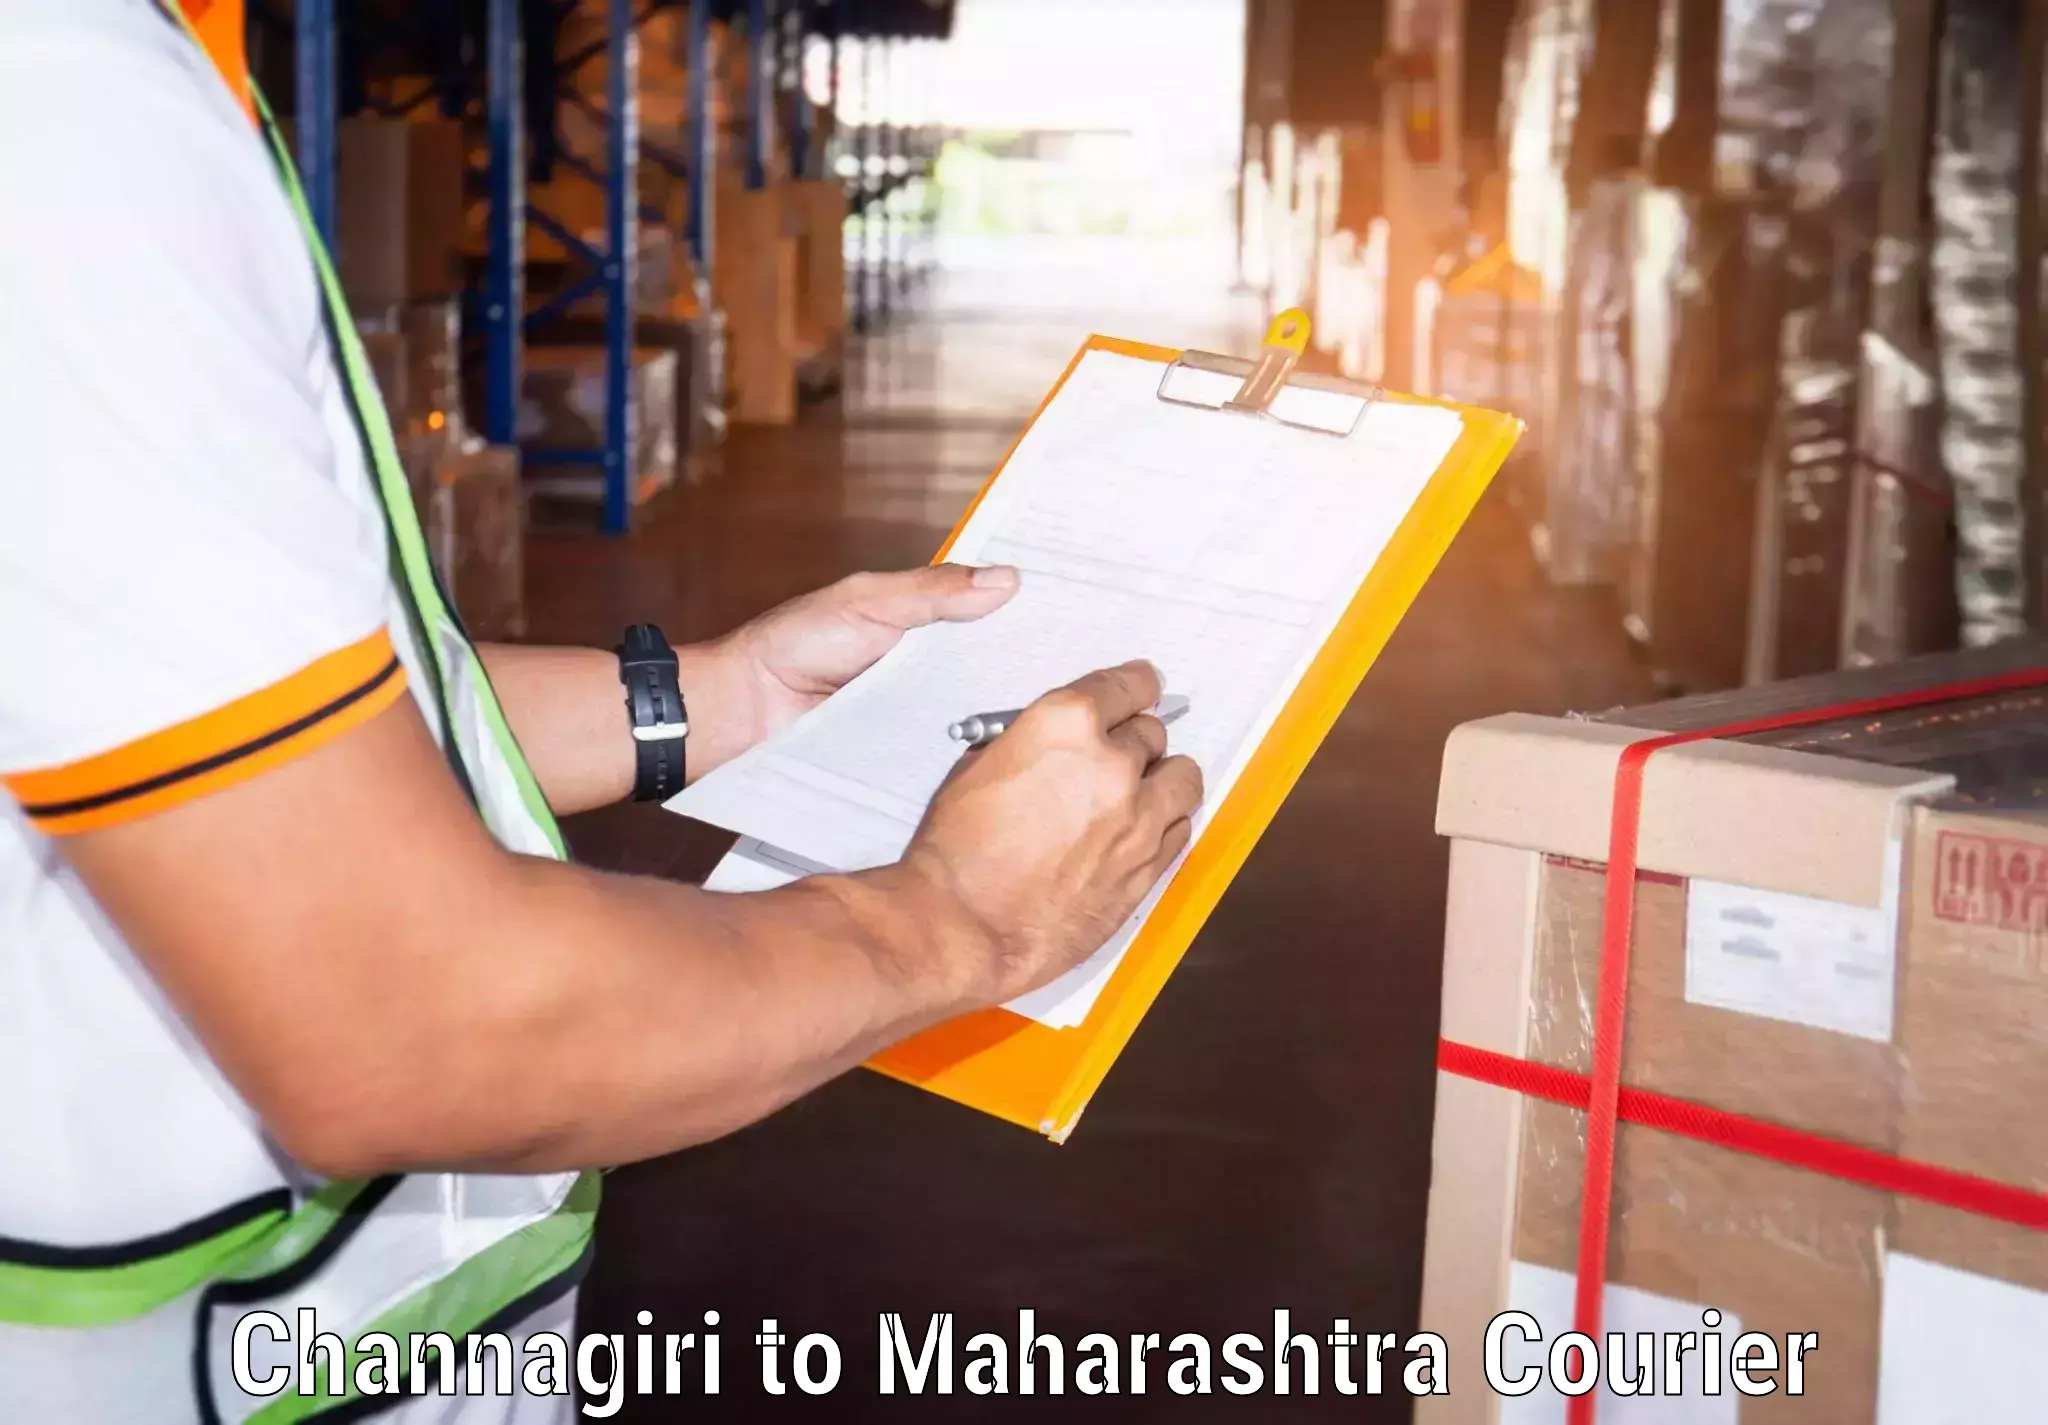 Express delivery capabilities Channagiri to Maharashtra